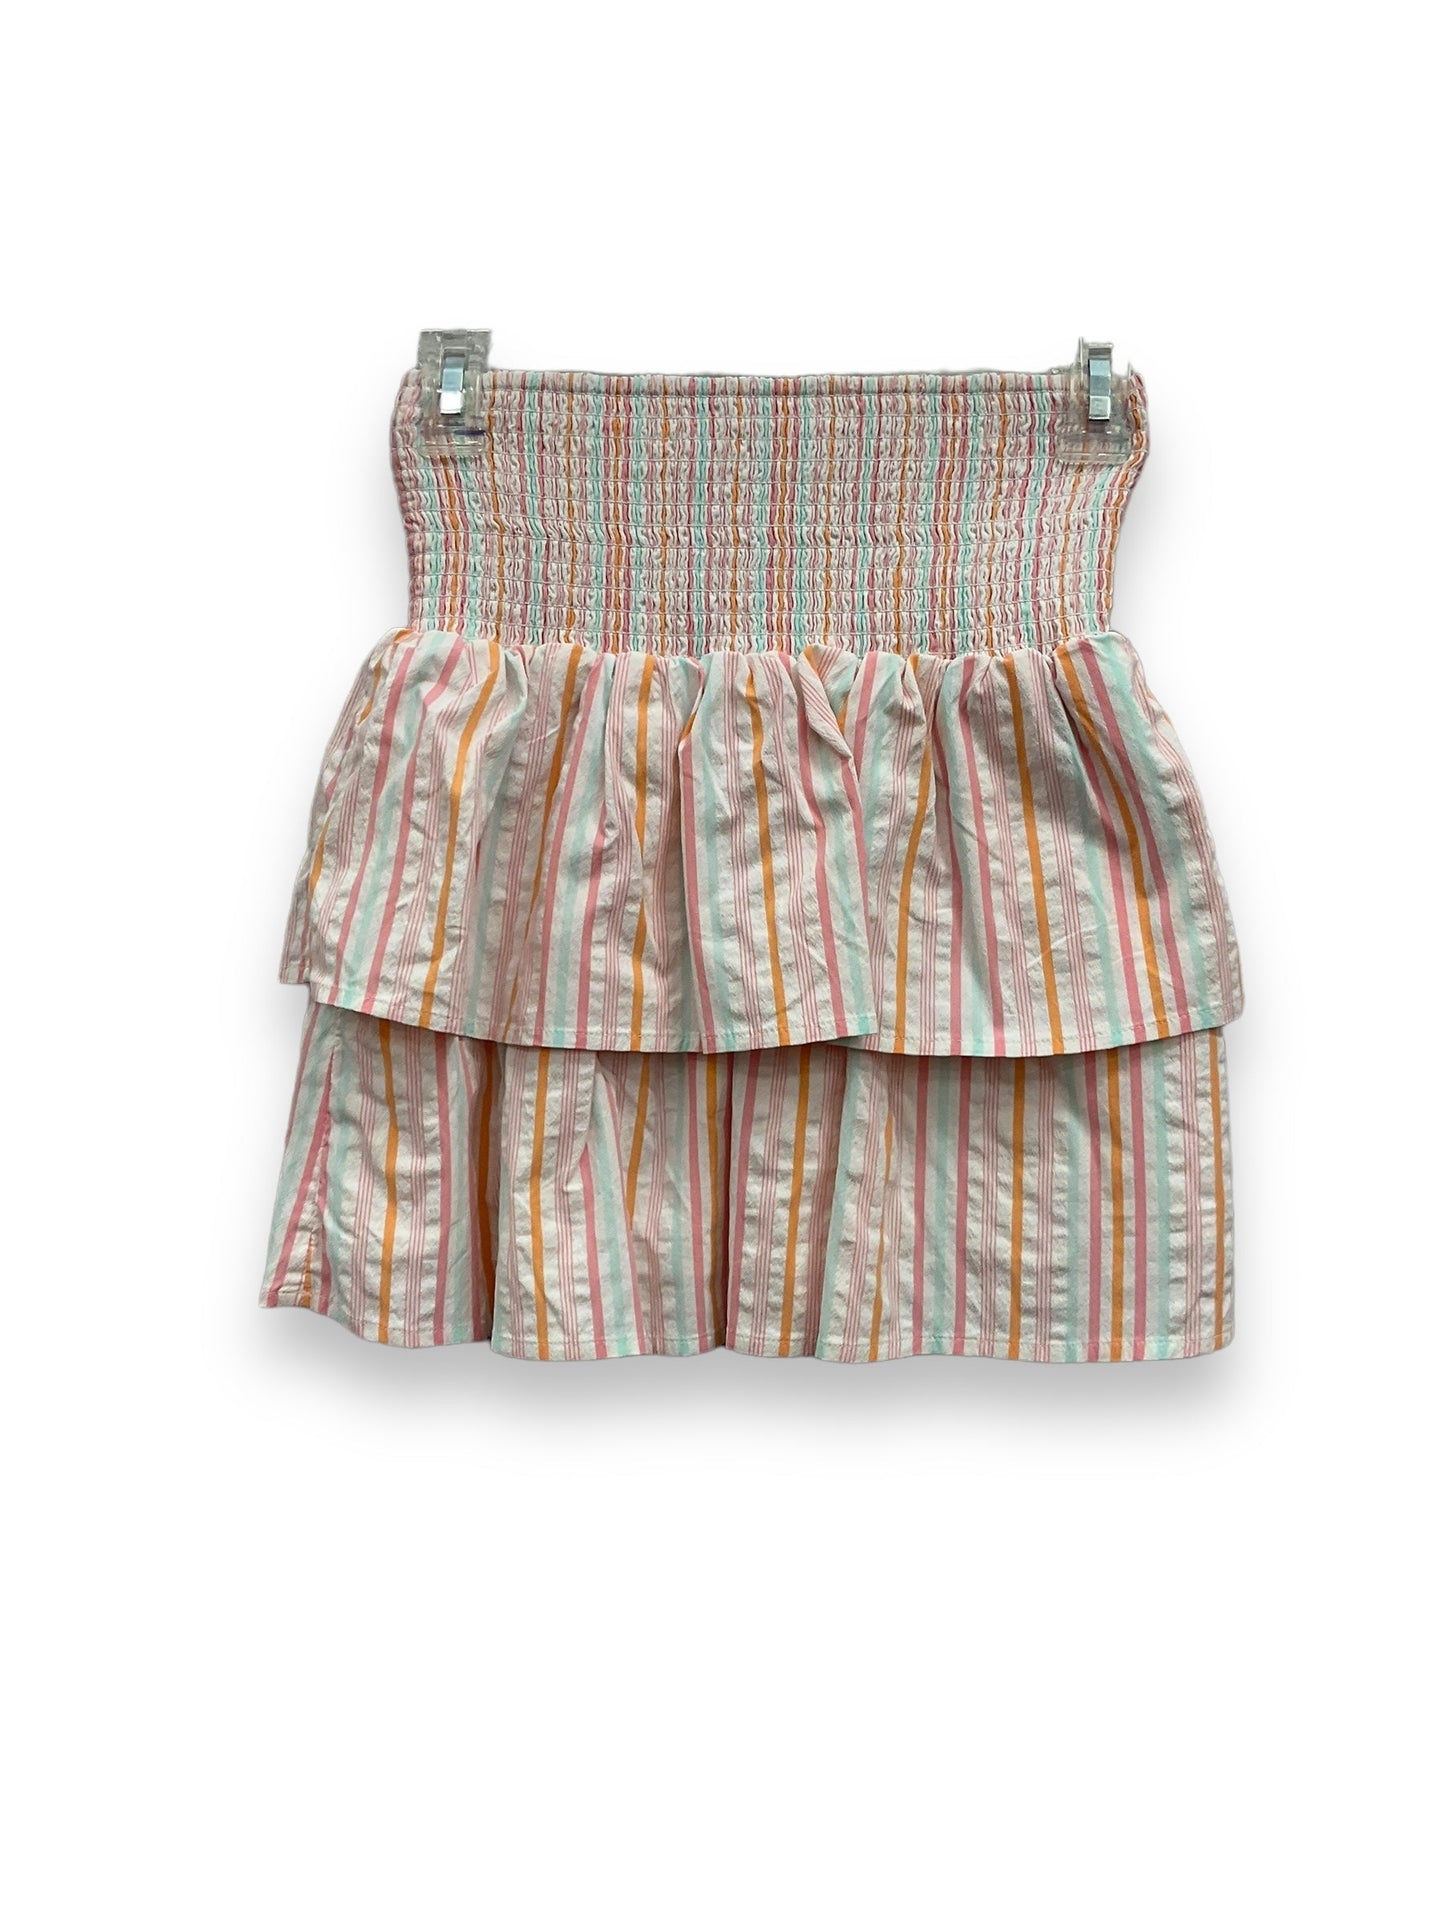 Multi-colored Skirt Mini & Short Vineyard Vines, Size Xxs